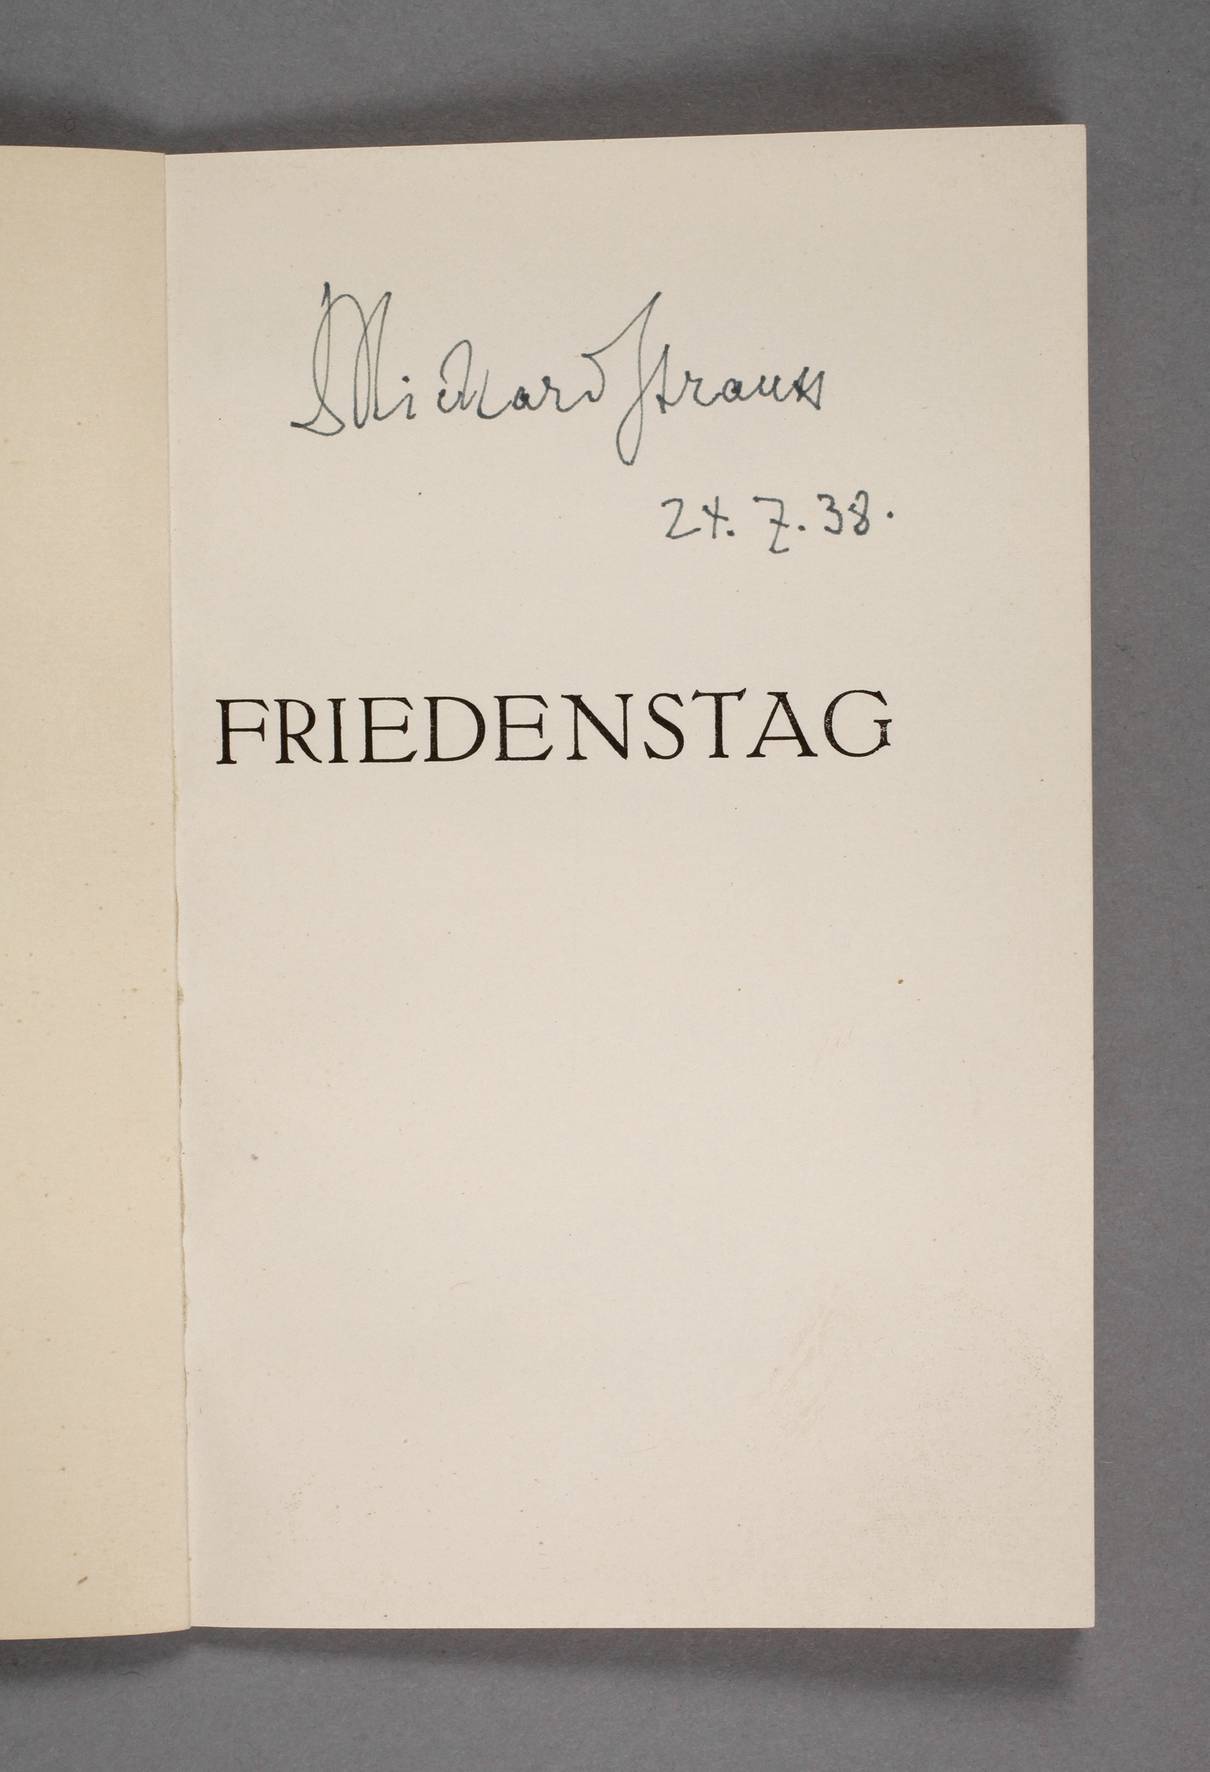 Autogramm Richard Strauss